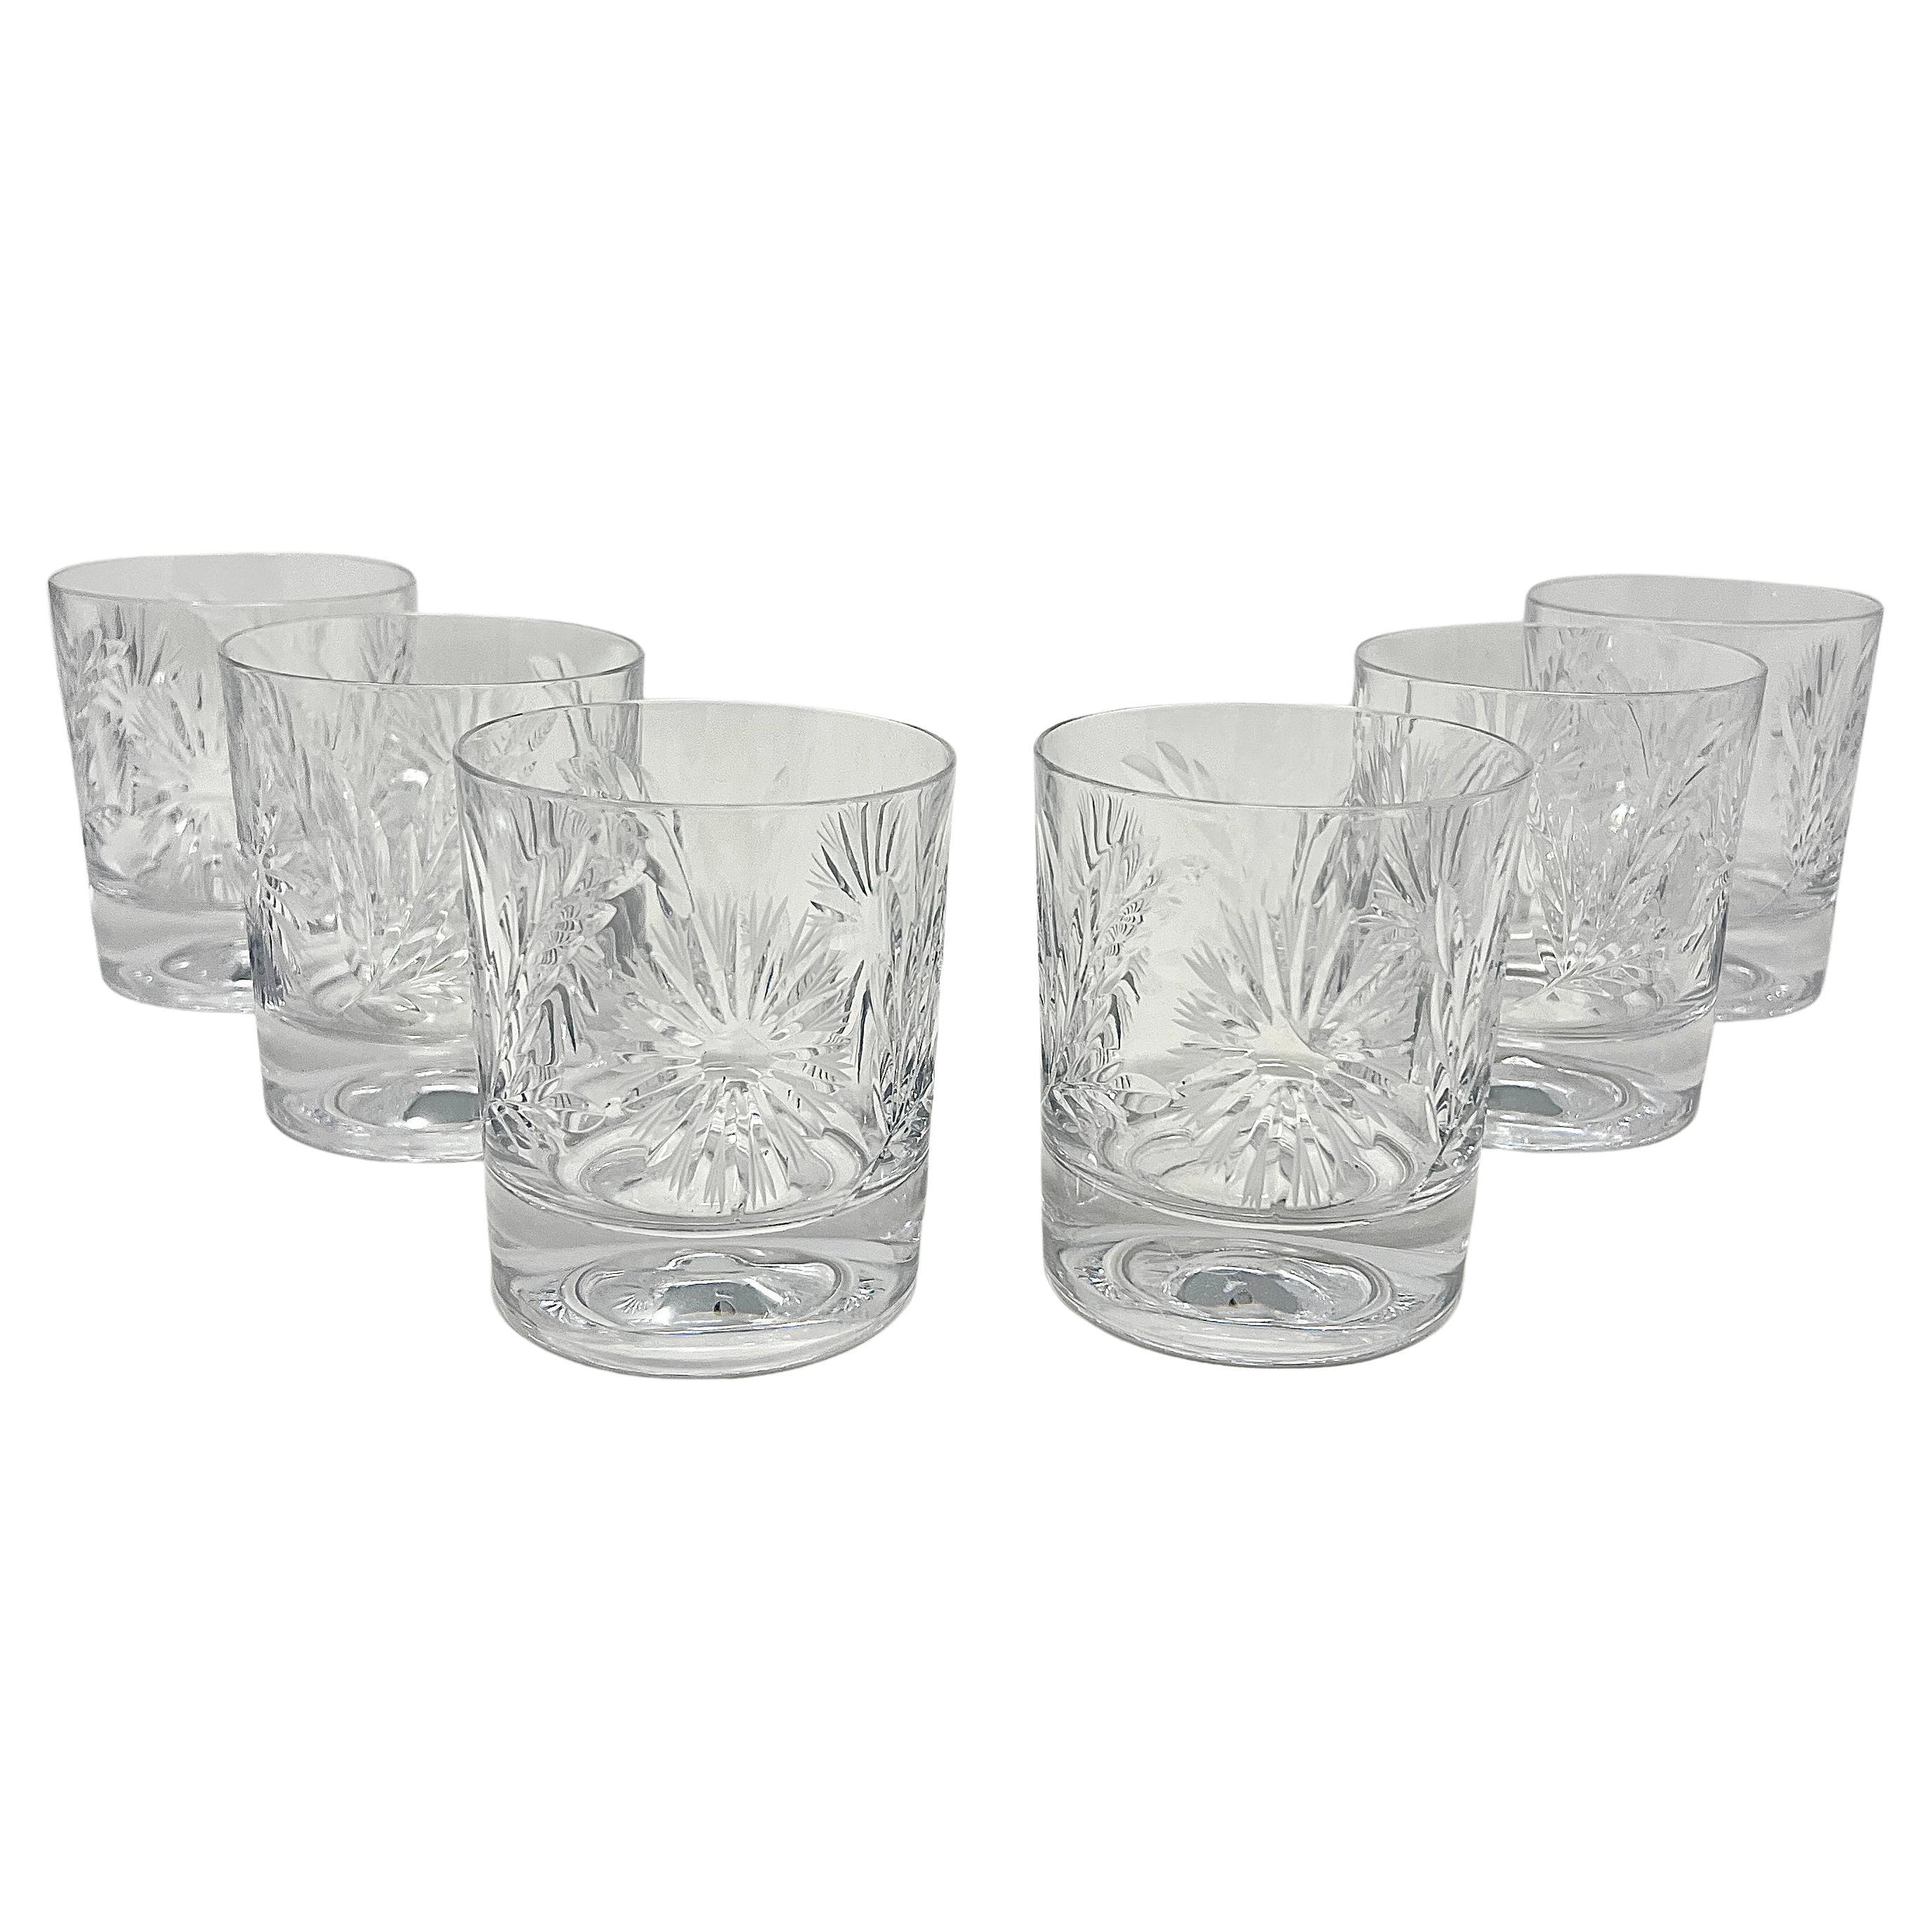 Ensemble de 6 verres doubles Old Fashioned en cristal taillé de style américain.